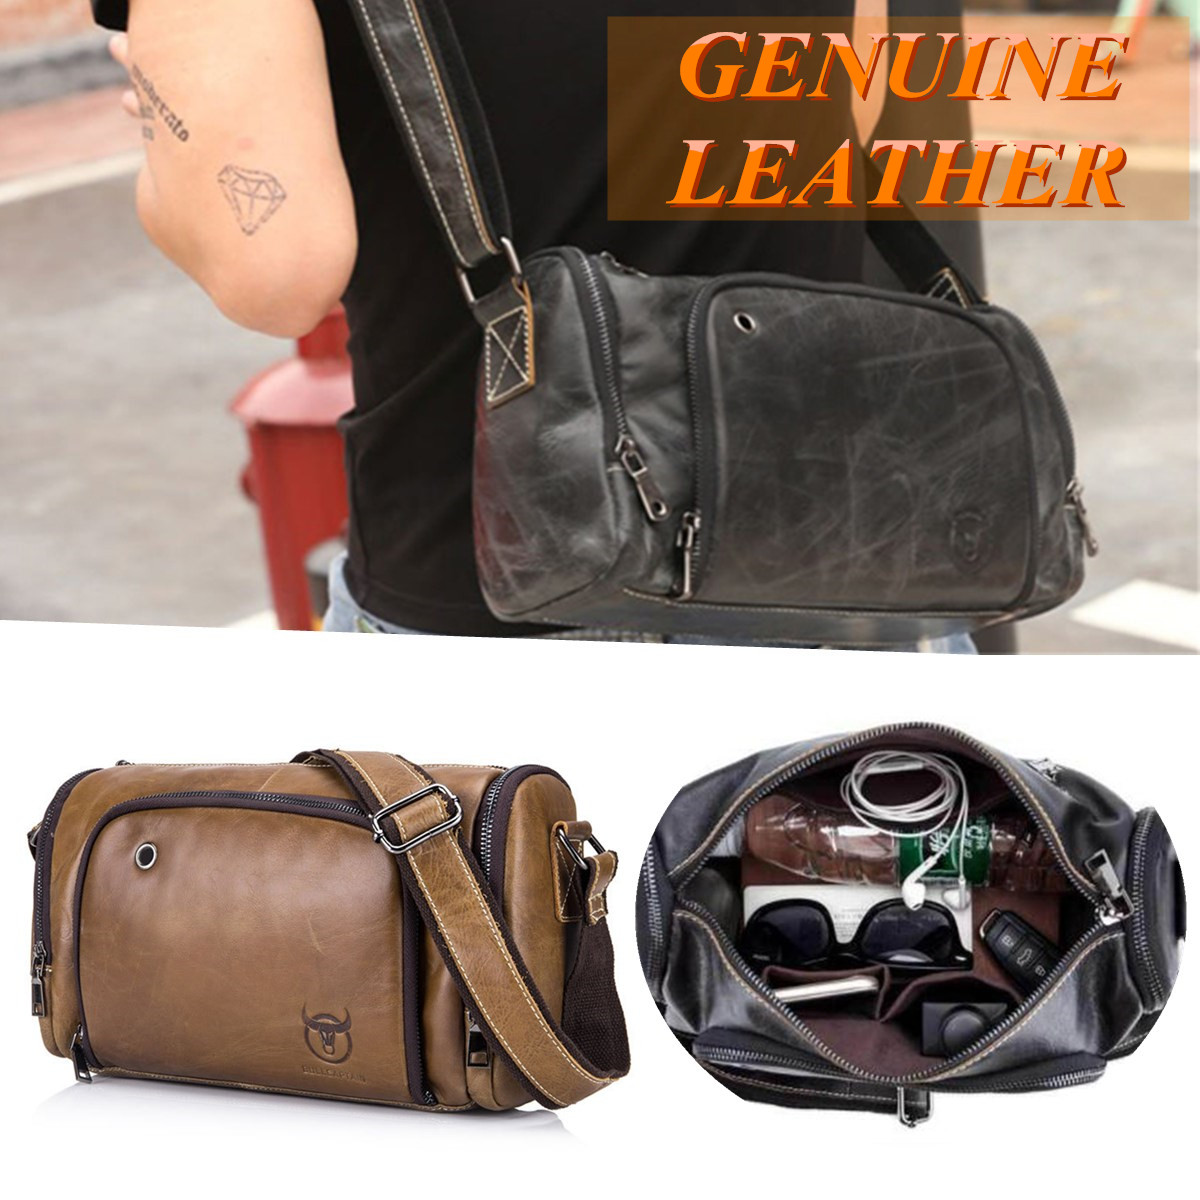 Men-Genuine-Leather-Vintage-Shoulder-Bag-Pack-Crossbody-Messenger-Gym-Pouch-Sports-Travel-1494849-1